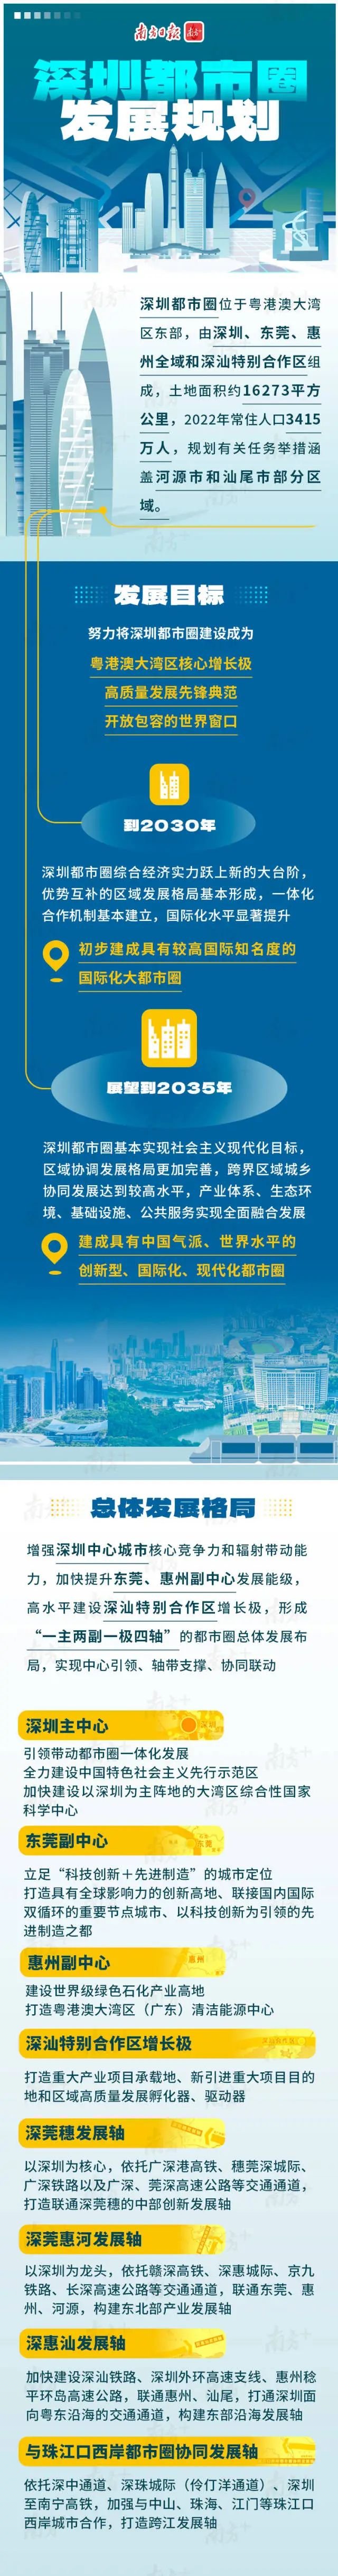 快讯｜《深圳都市圈发展规划》重磅发布 提升东莞、惠州副中心发展能级